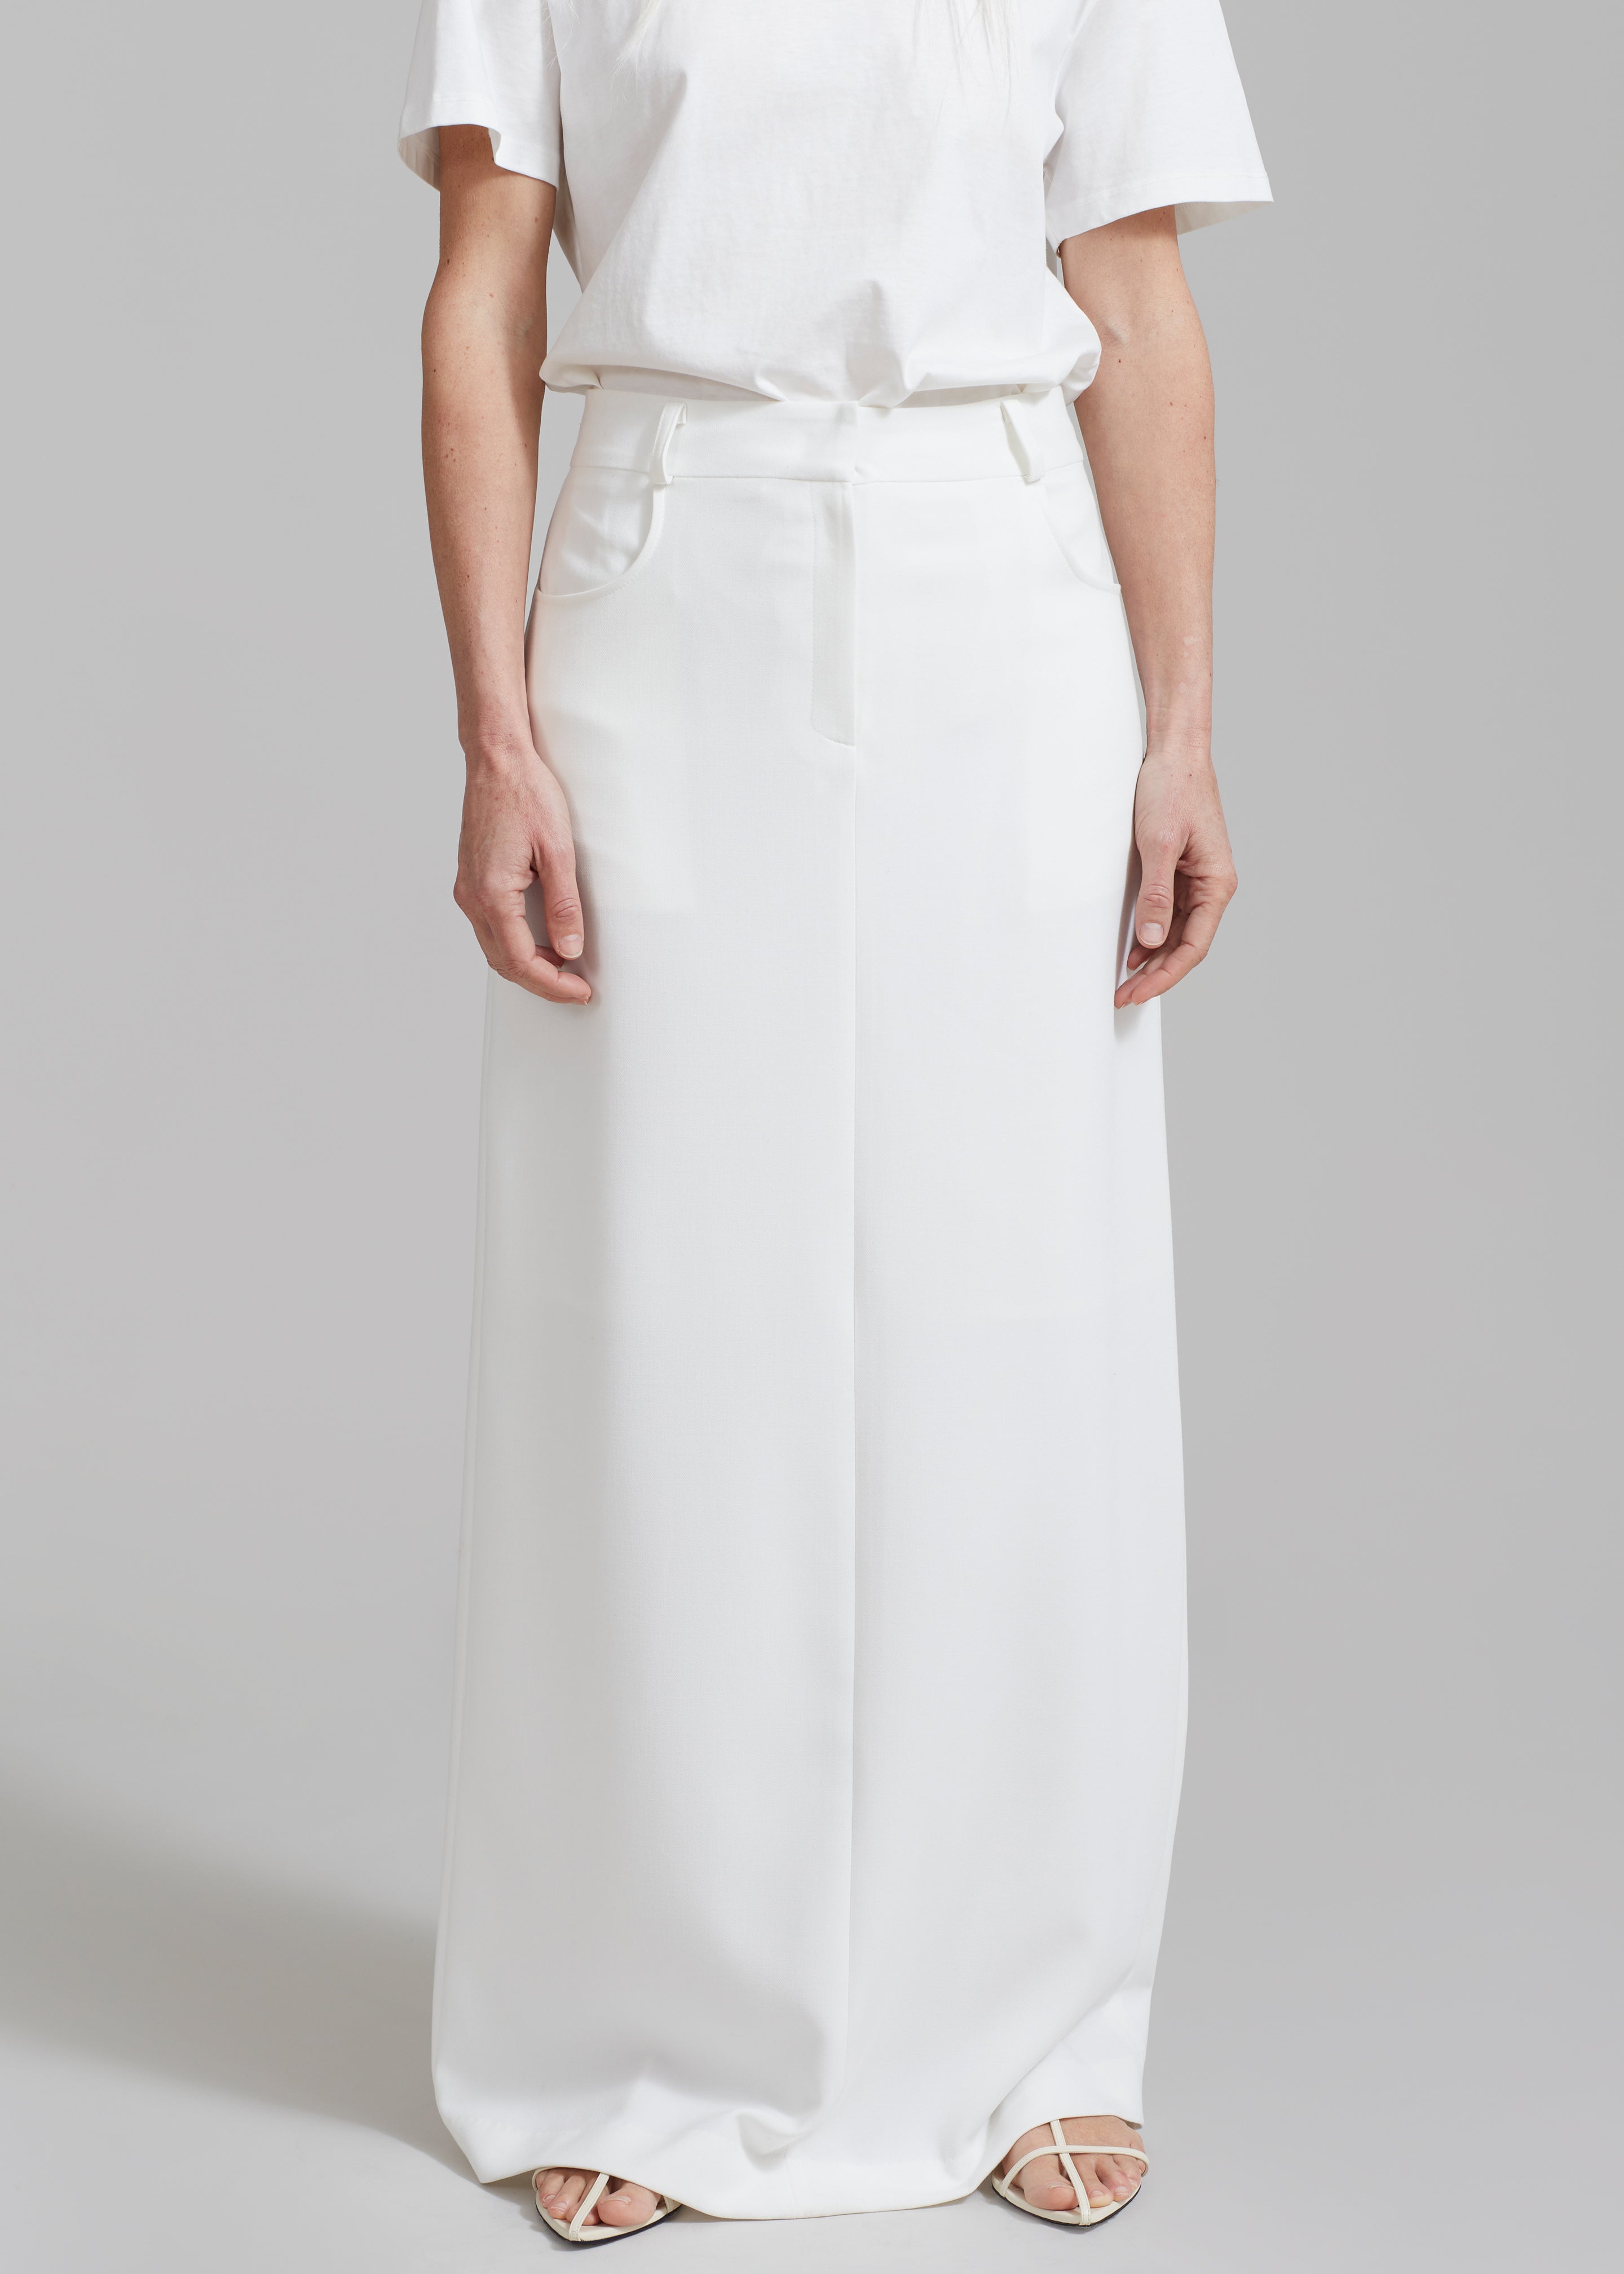 Malvo Long Pencil Skirt - White - 5